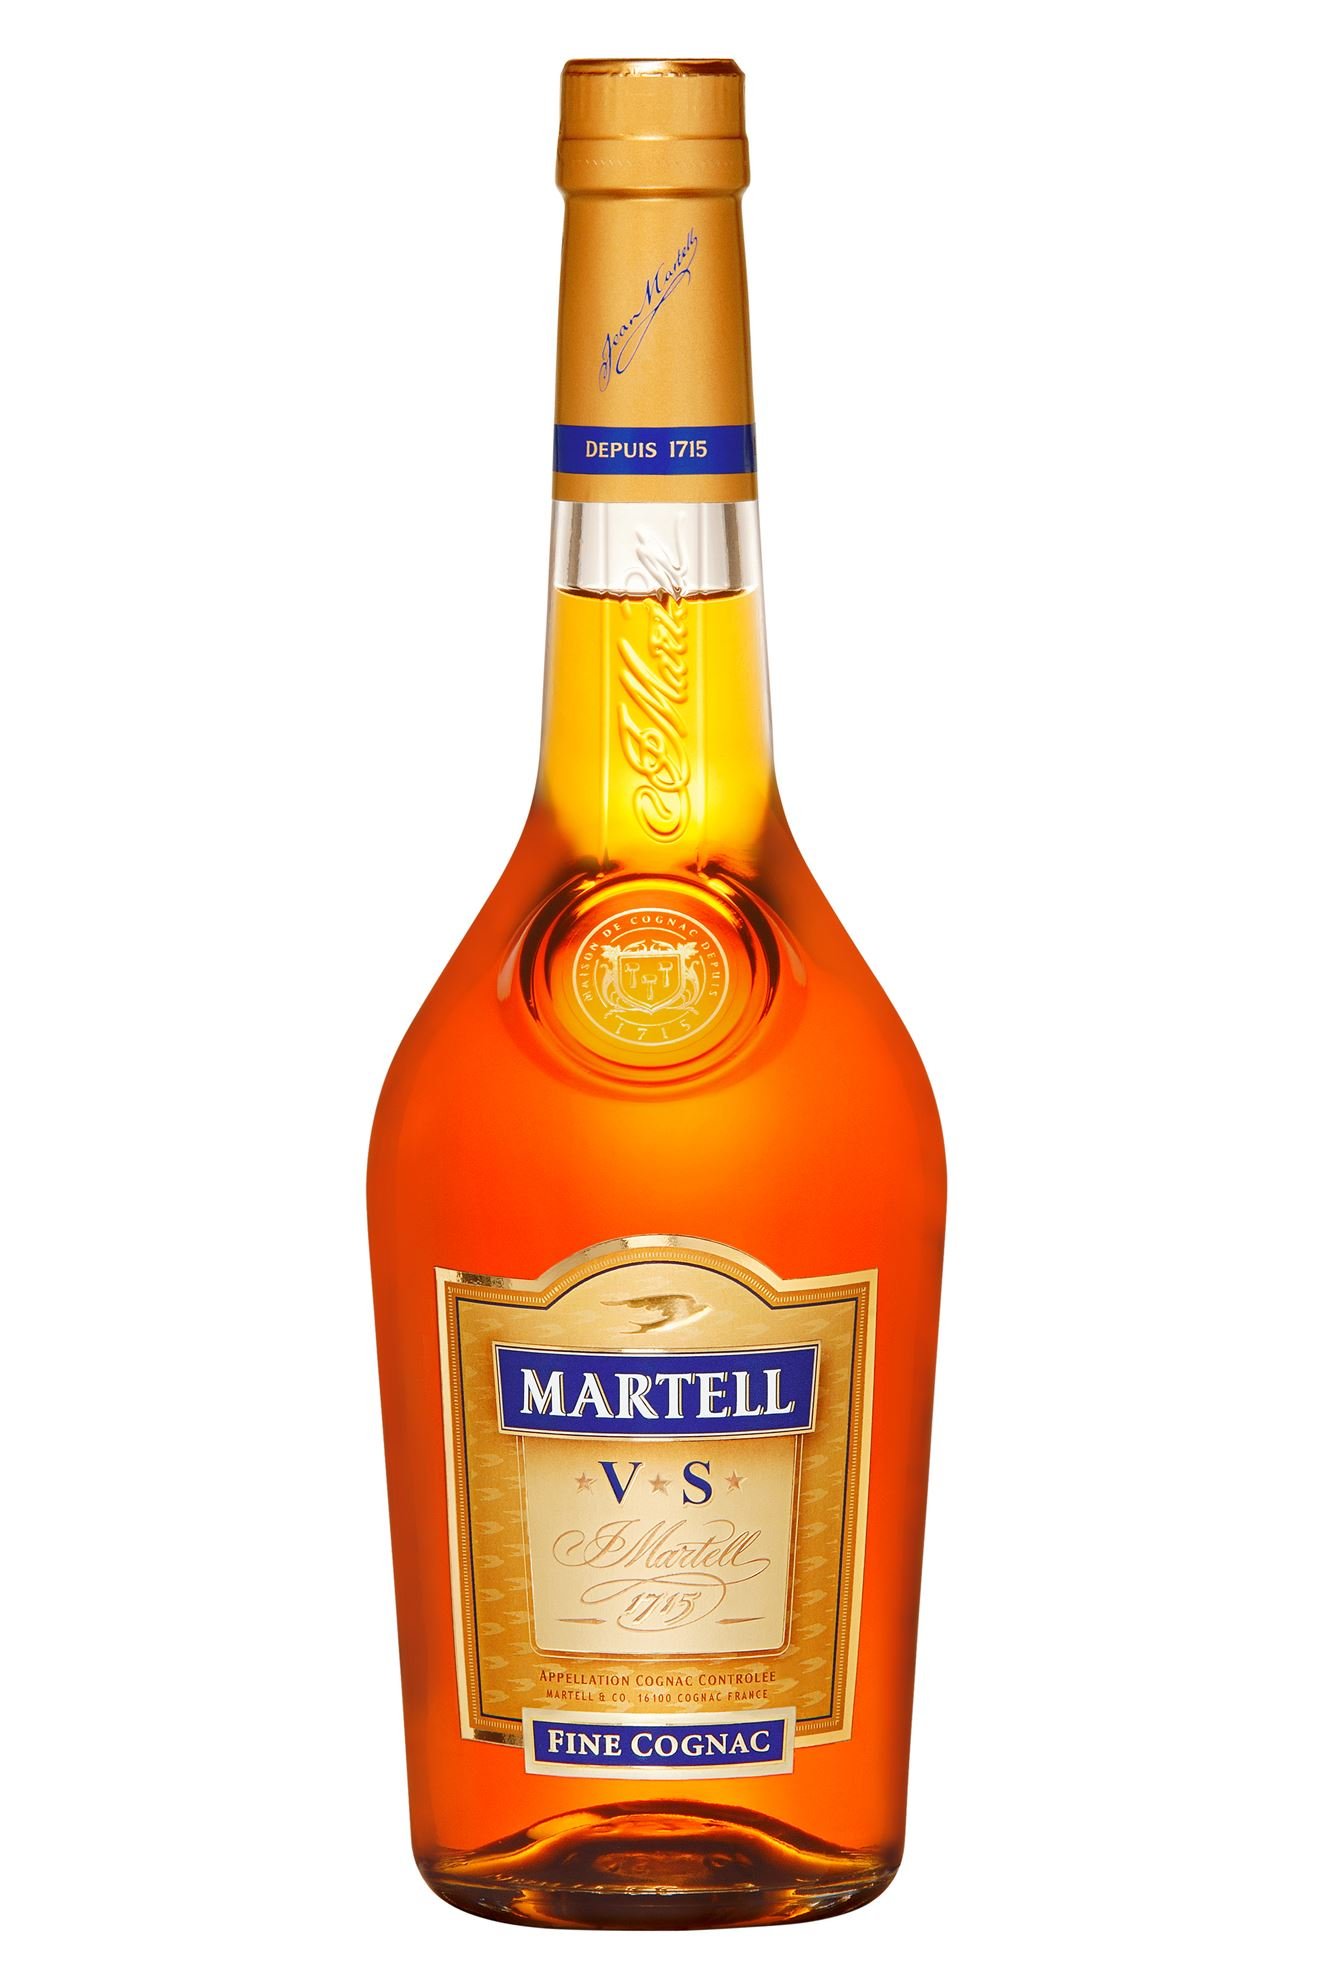 Martell Vs Cognac* 1 Ltr